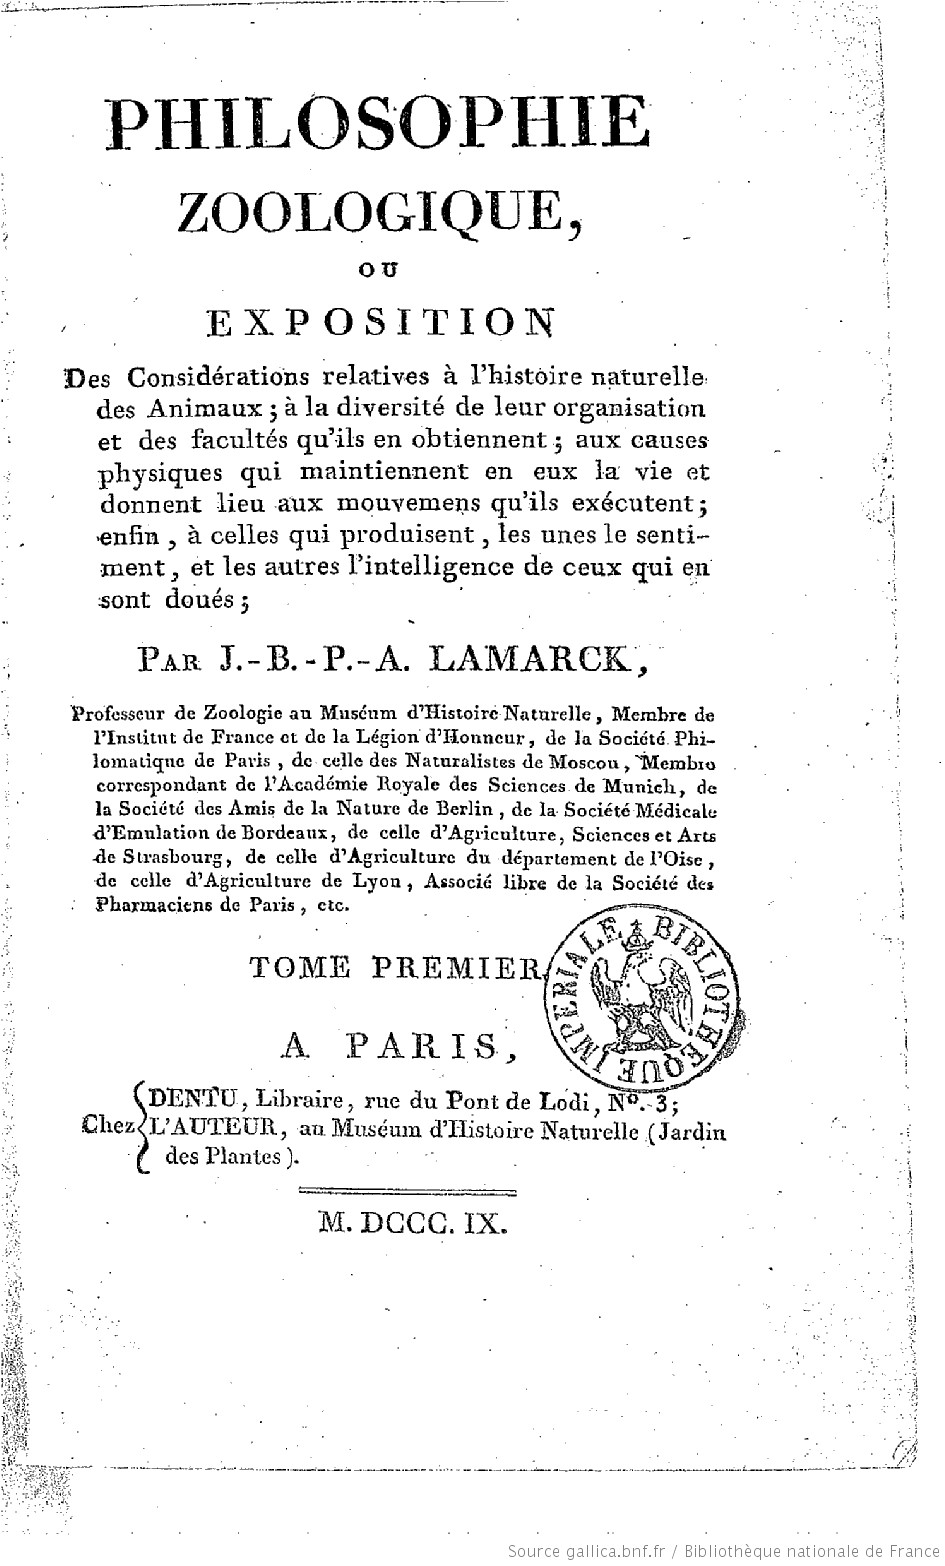 Philosophie zoologique, de Lamarck (1809)